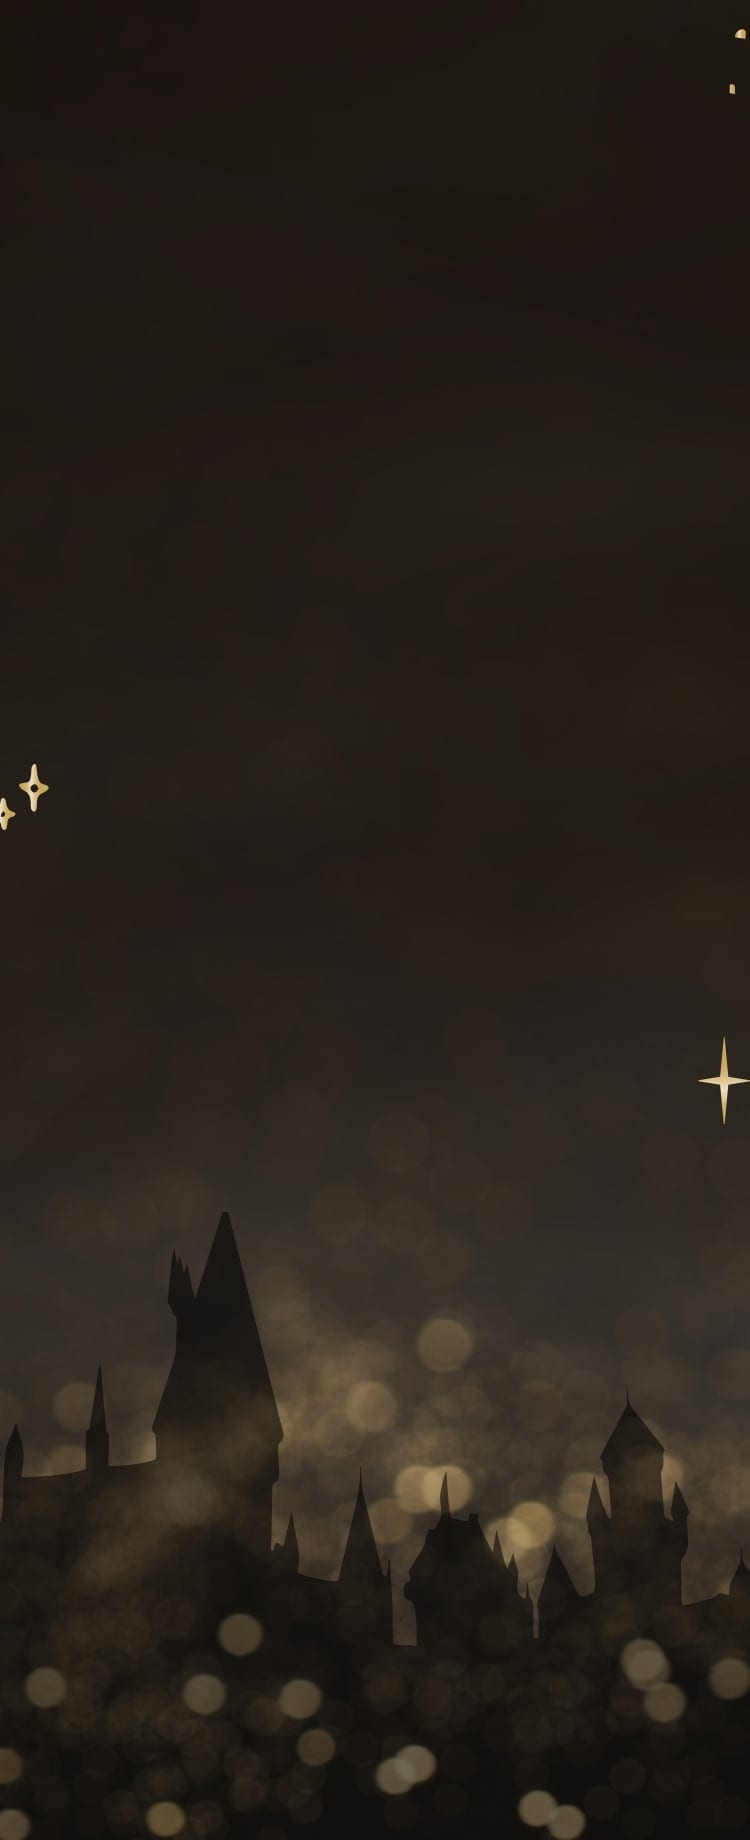 Imagen de la silueta del castillo de Hogwarts rodeado de estrellas centelleantes.